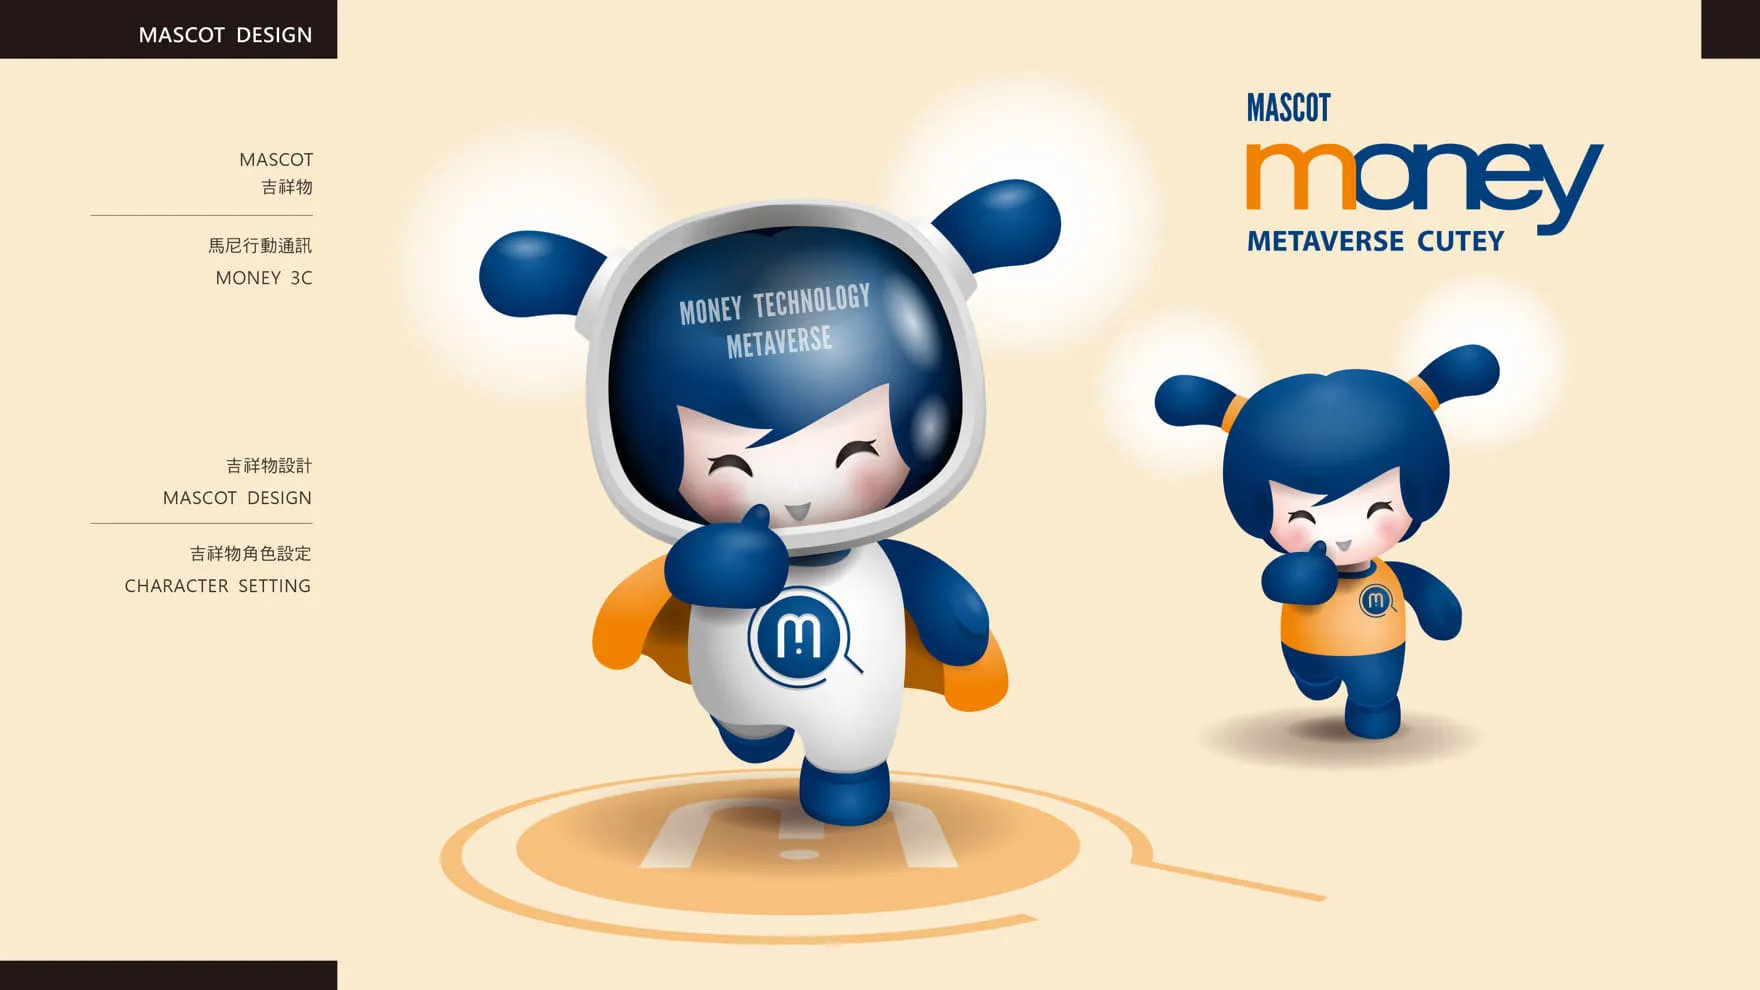 馬尼行動通訊品牌吉祥物設計 Mascot design